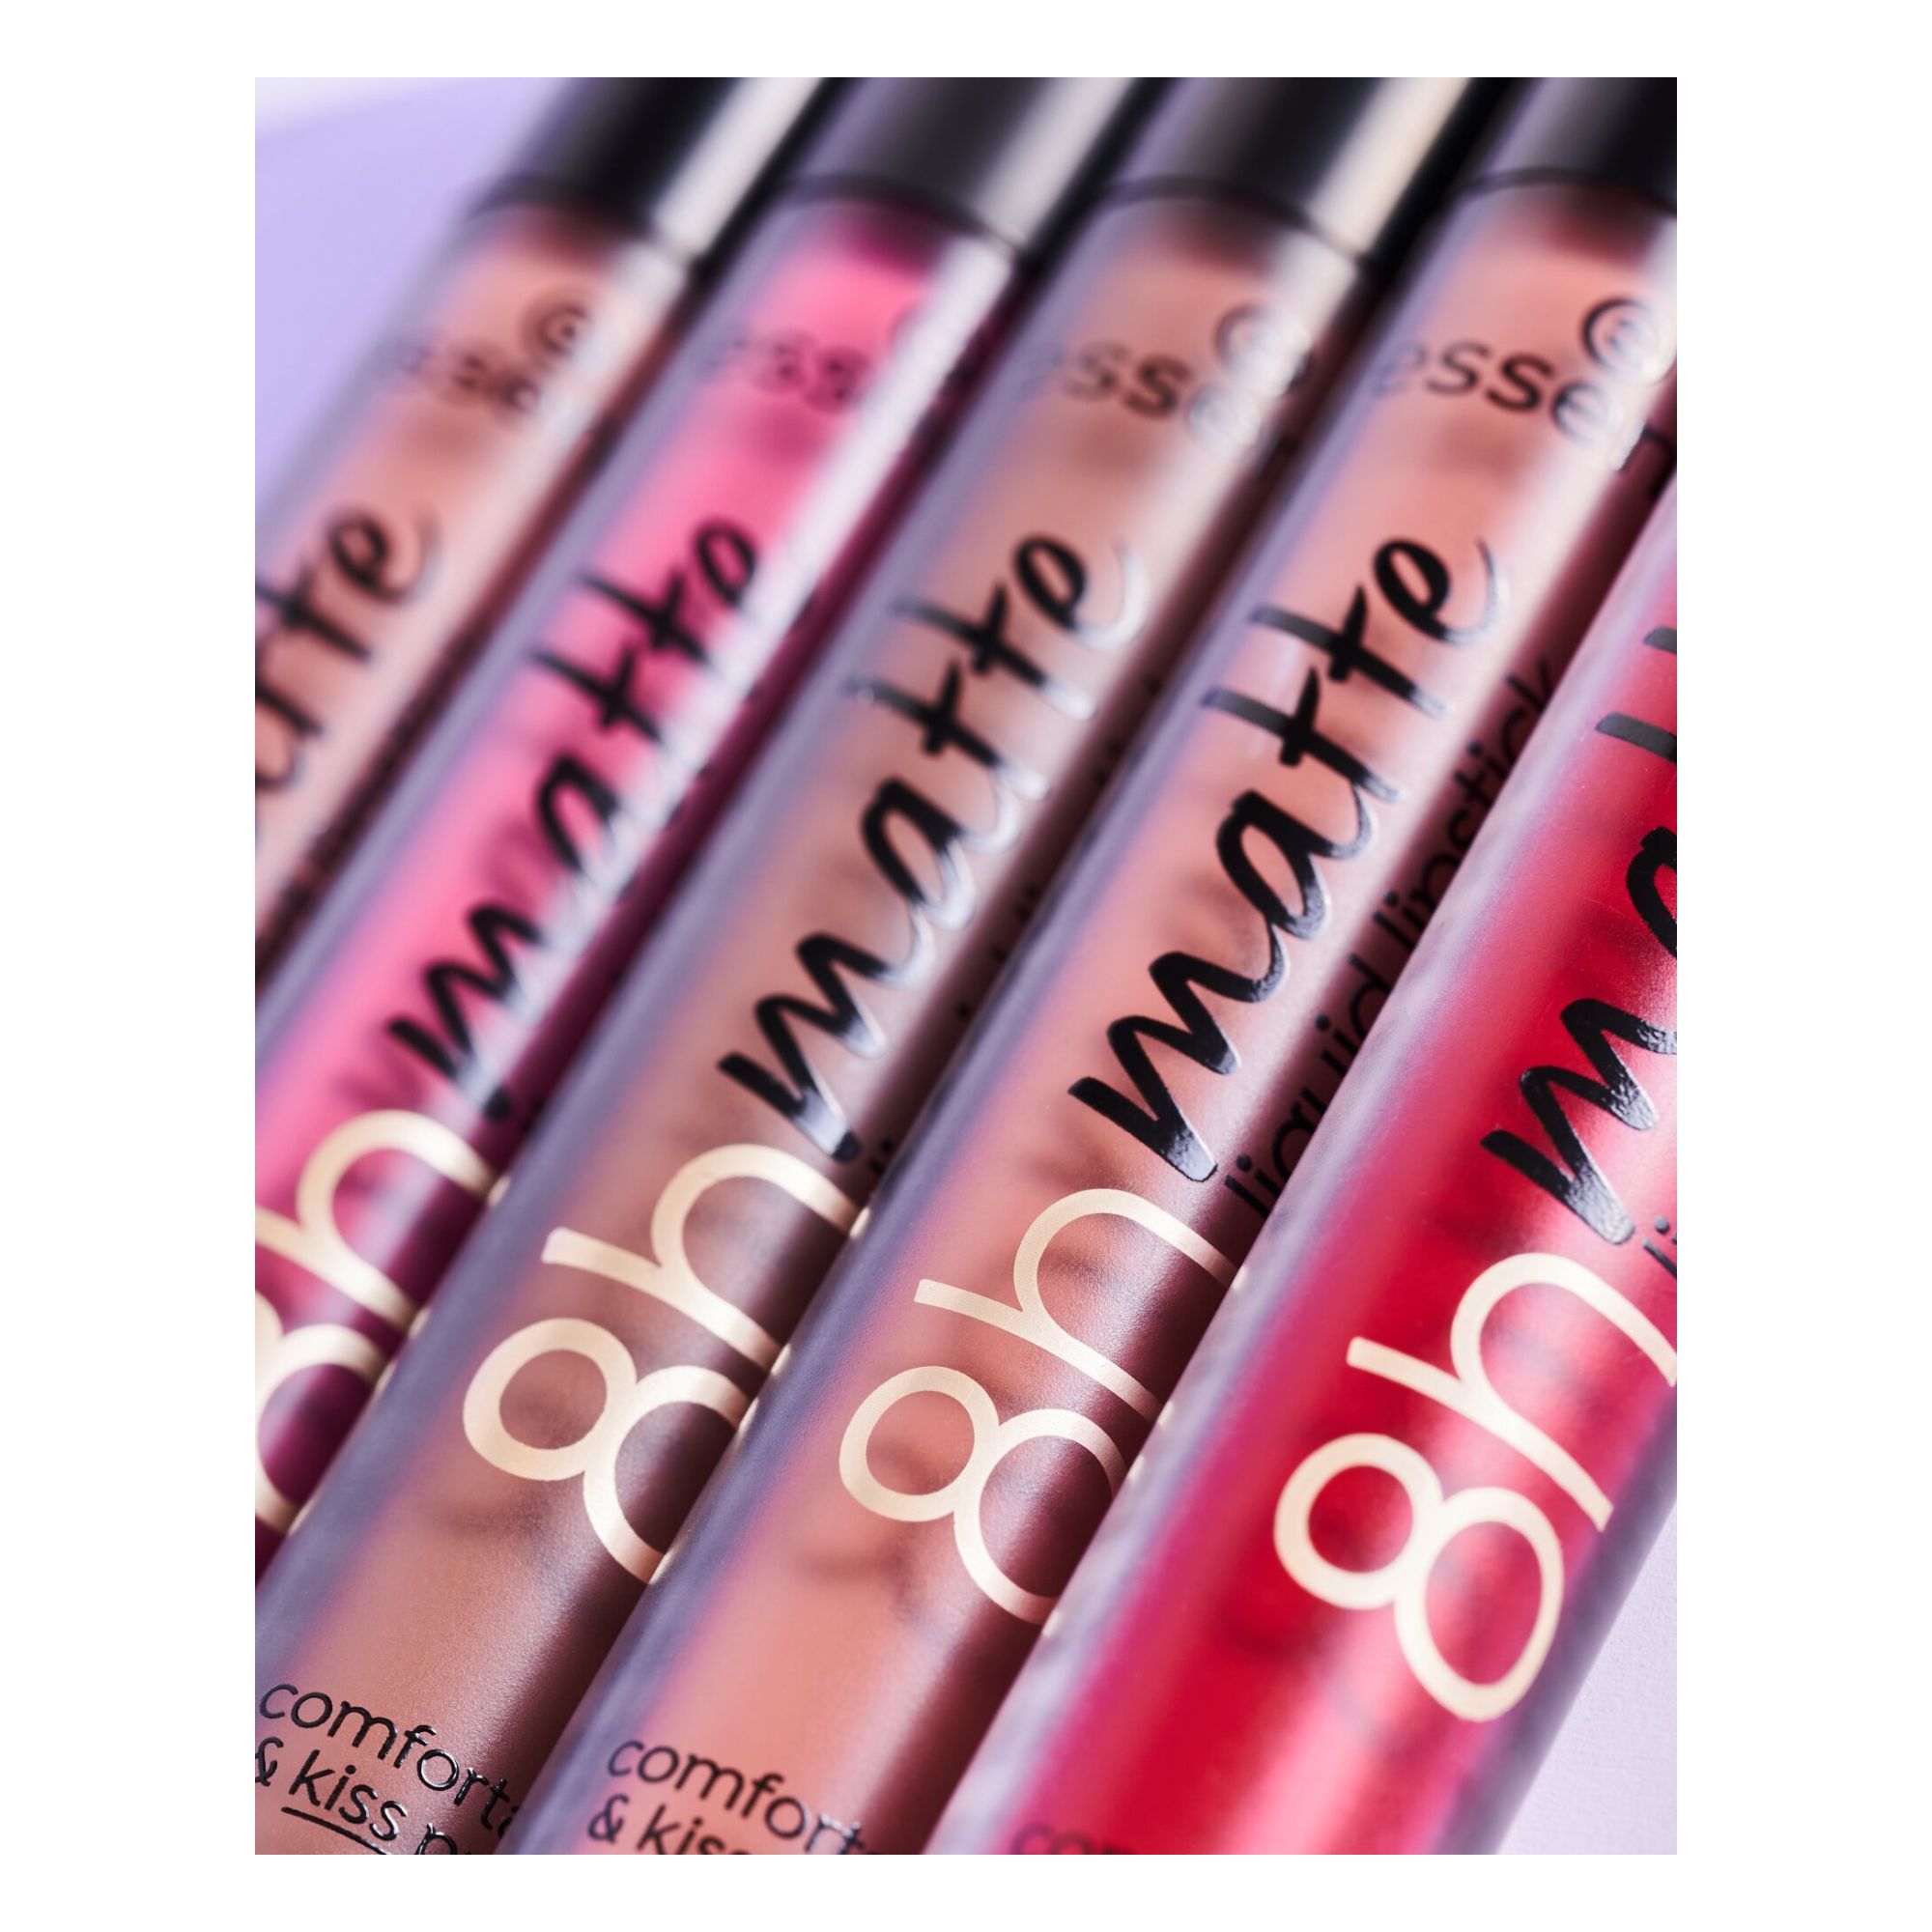 Rouge à Lèvres Liquide - 8h Matte Liquid Lipstick